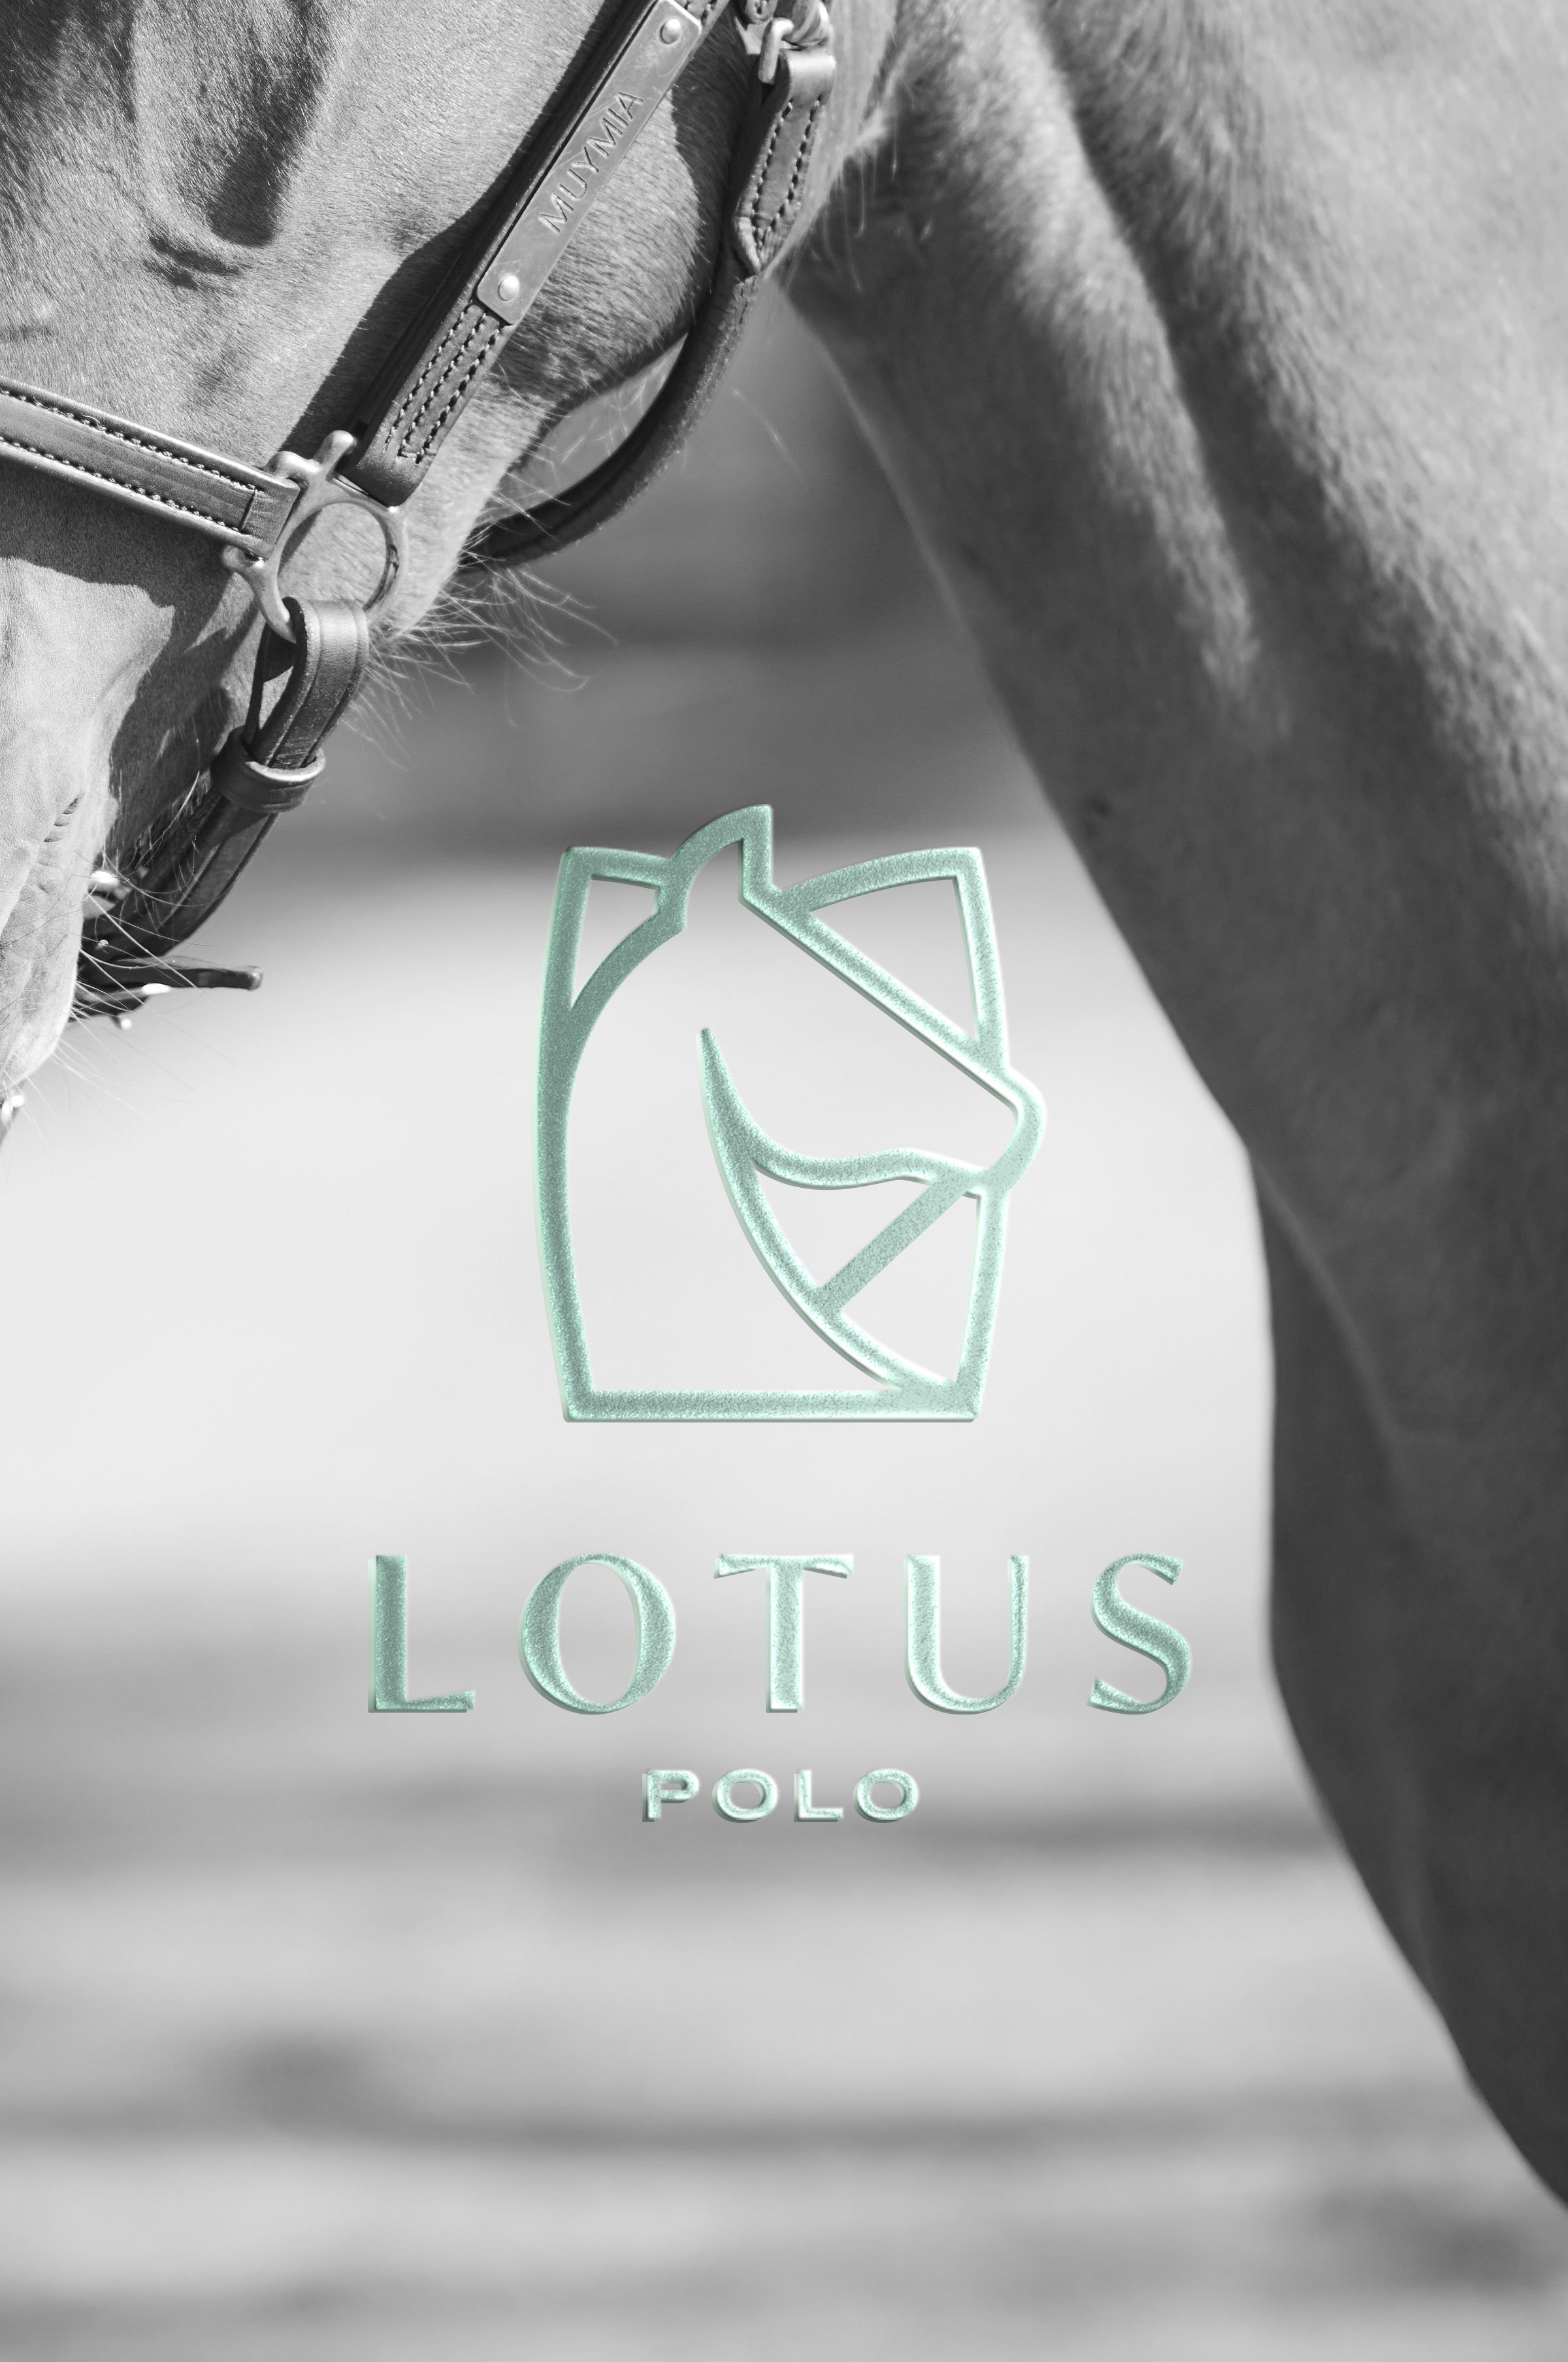 Lotus-Polo_pag-web-arcal.jpg